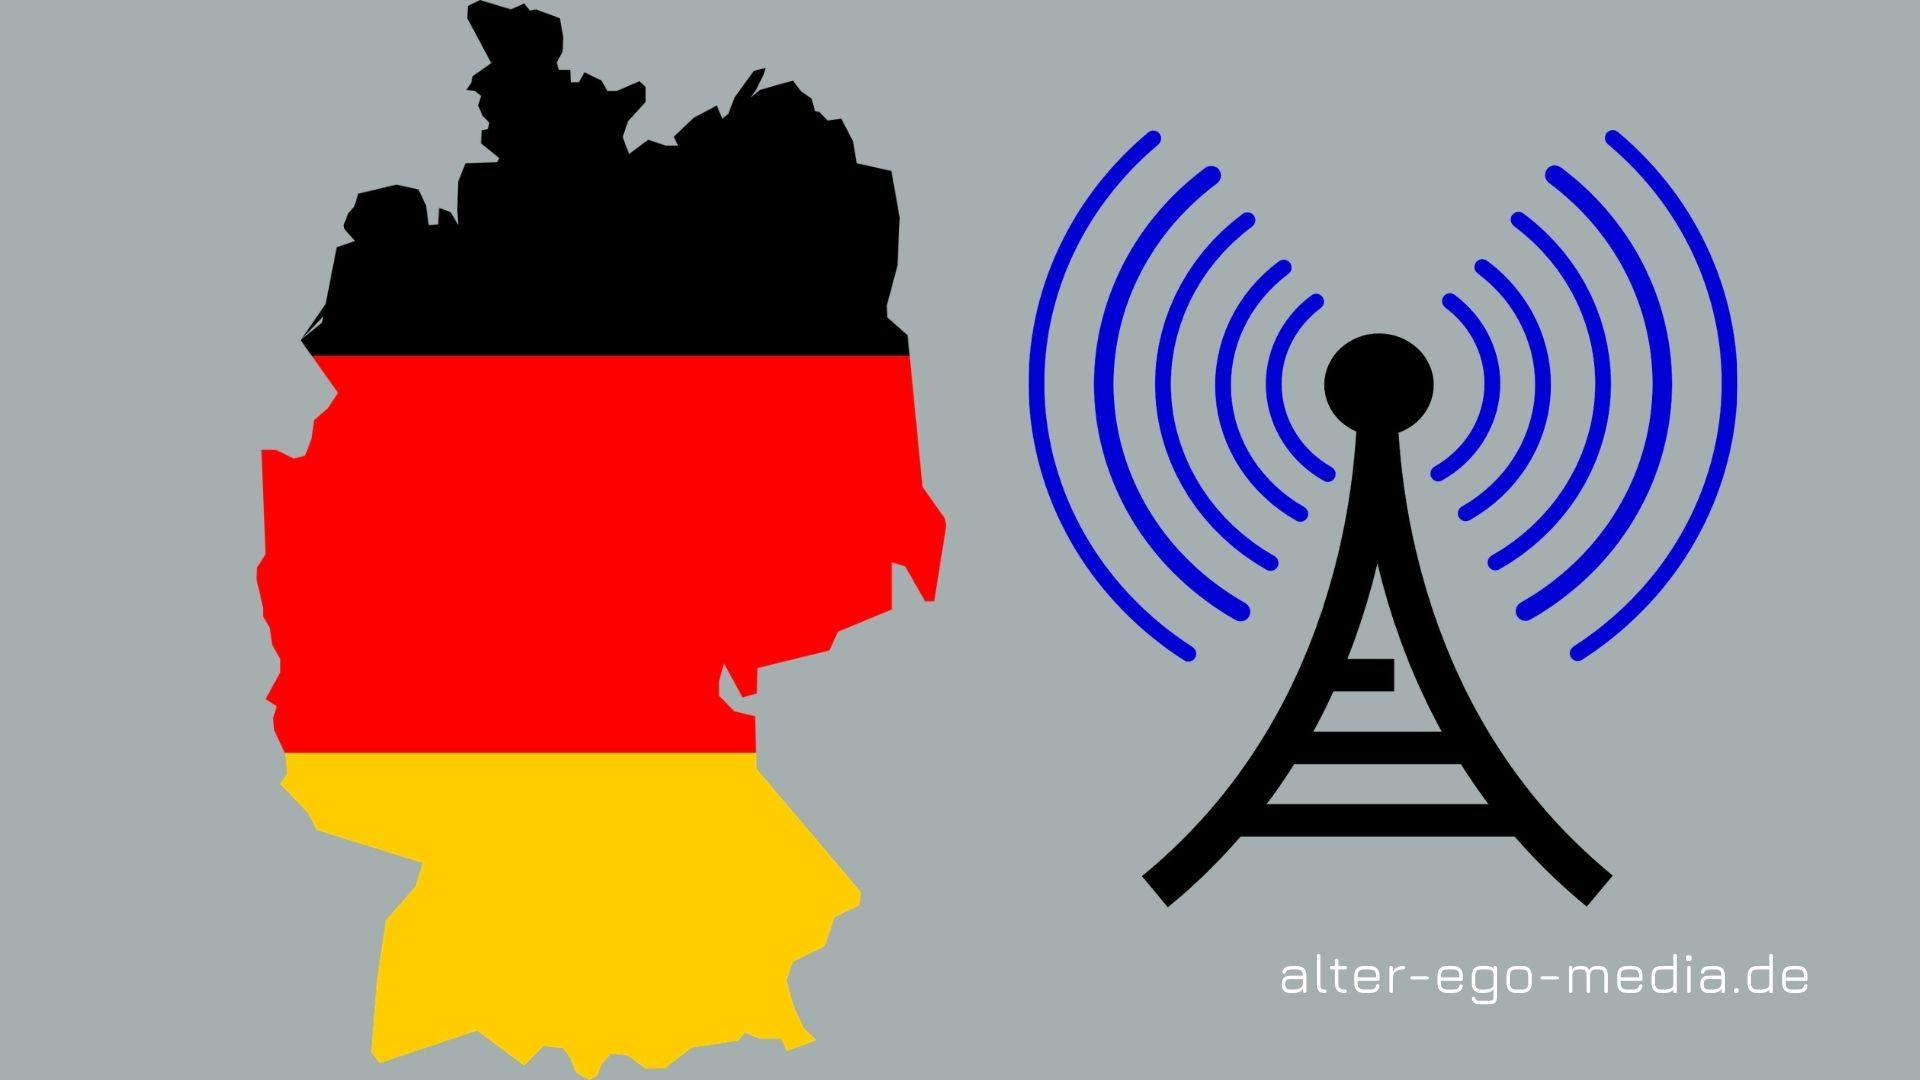 Покрытие мобильной связи в Германии